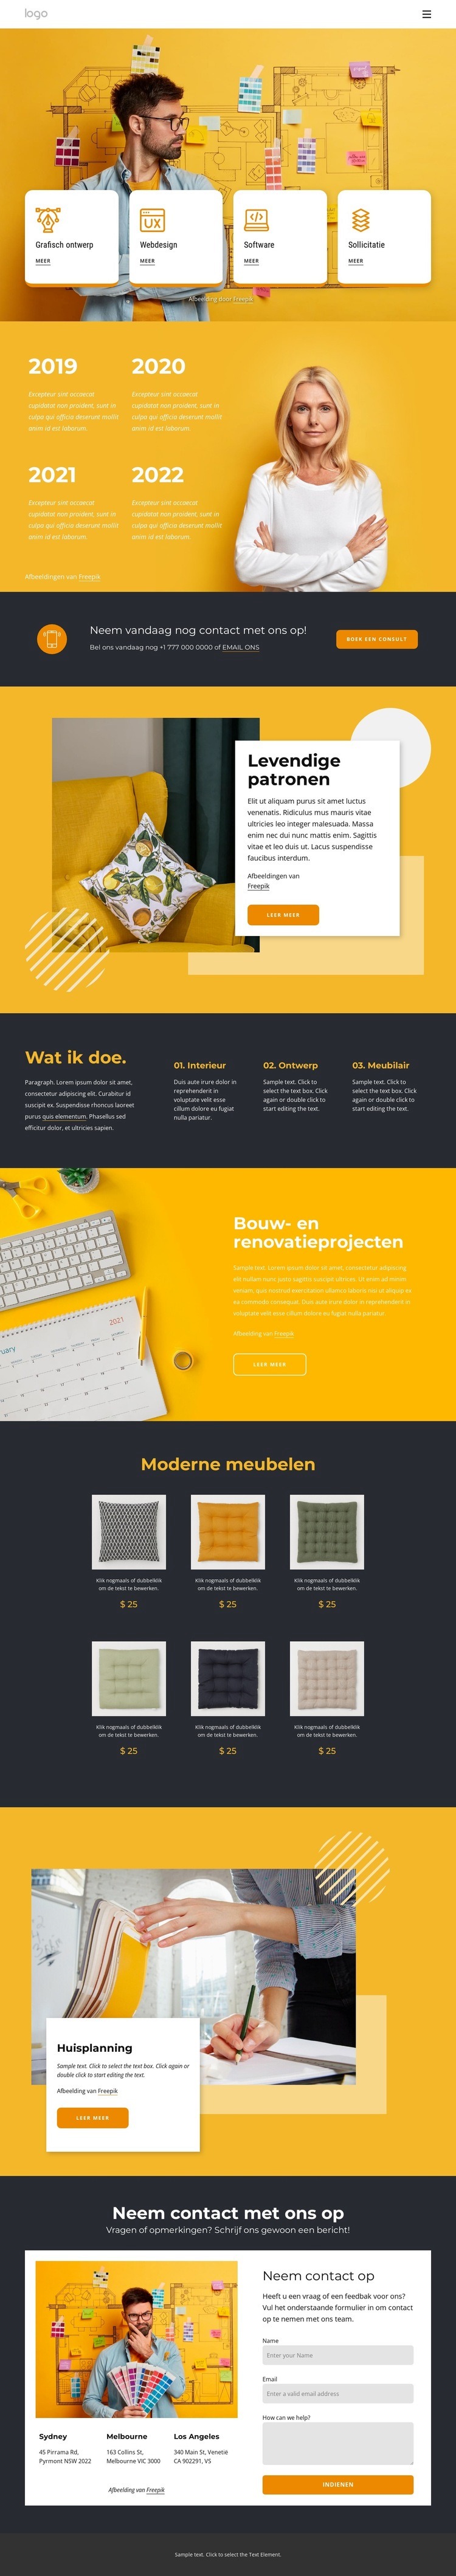 Modern ontwerpbureau Website mockup